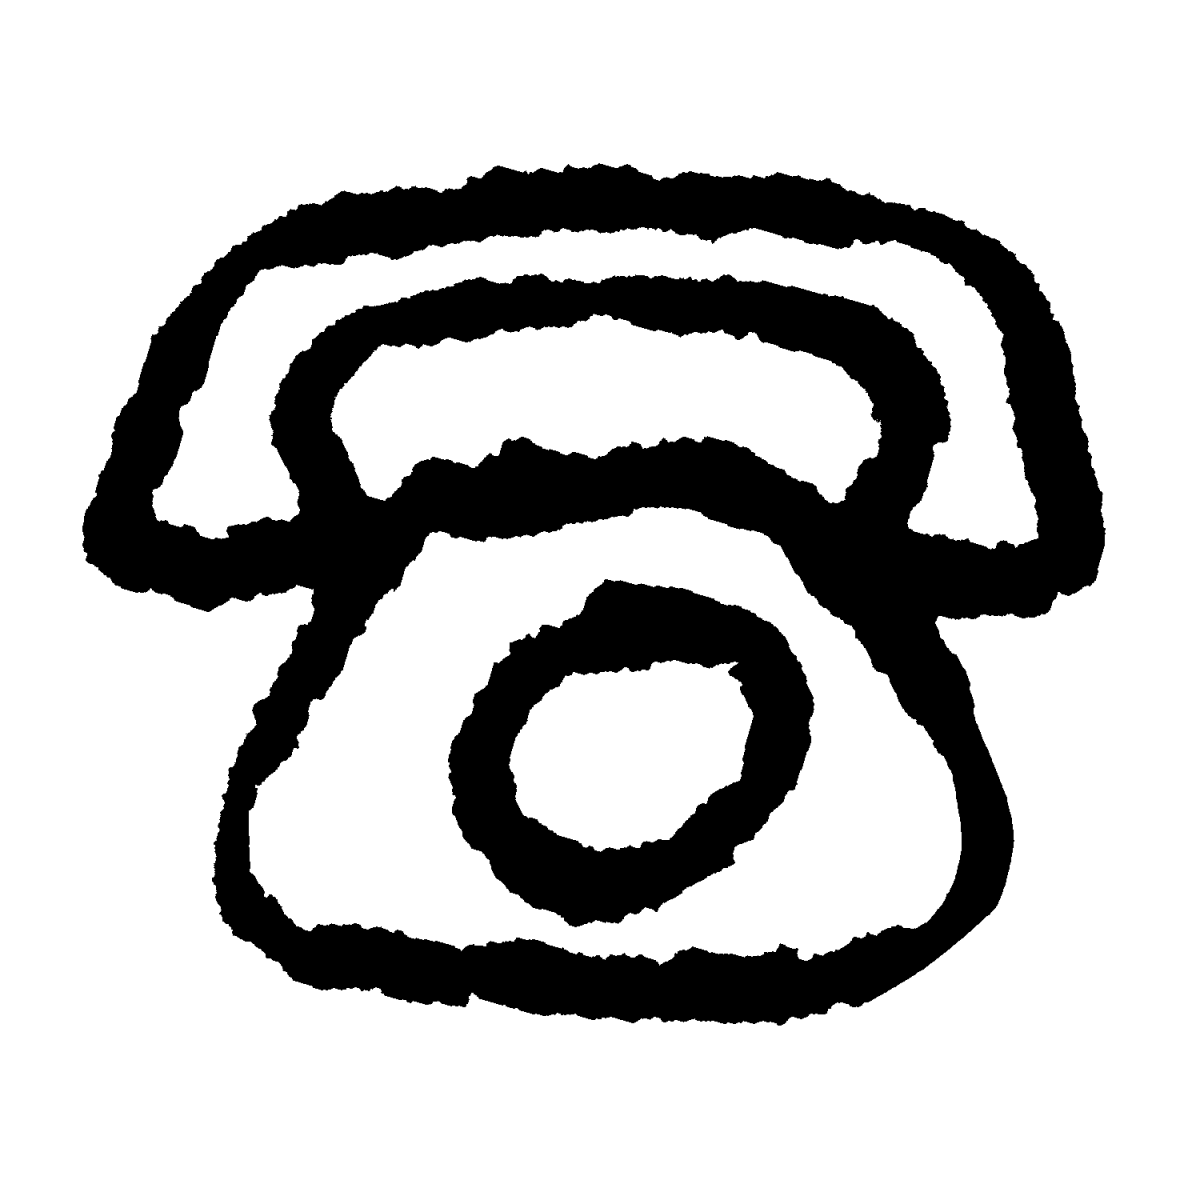 黒電話（2種）のイラスト / Black rotary-dial telephone (2 types) Illustration